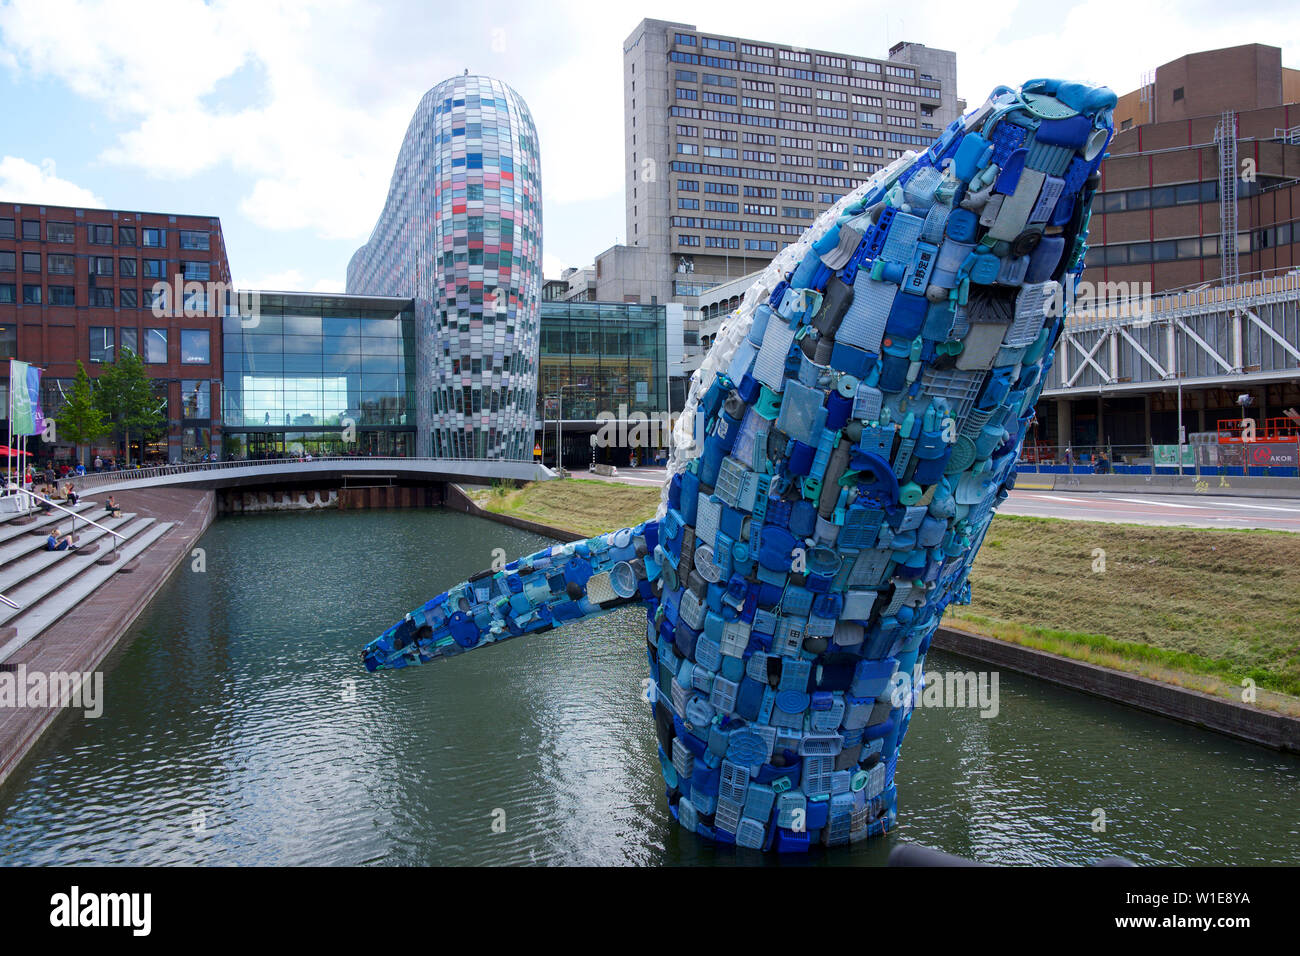 Skyscraper recycled plastic sculpture, Utrecht, Netherlands Stock Photo